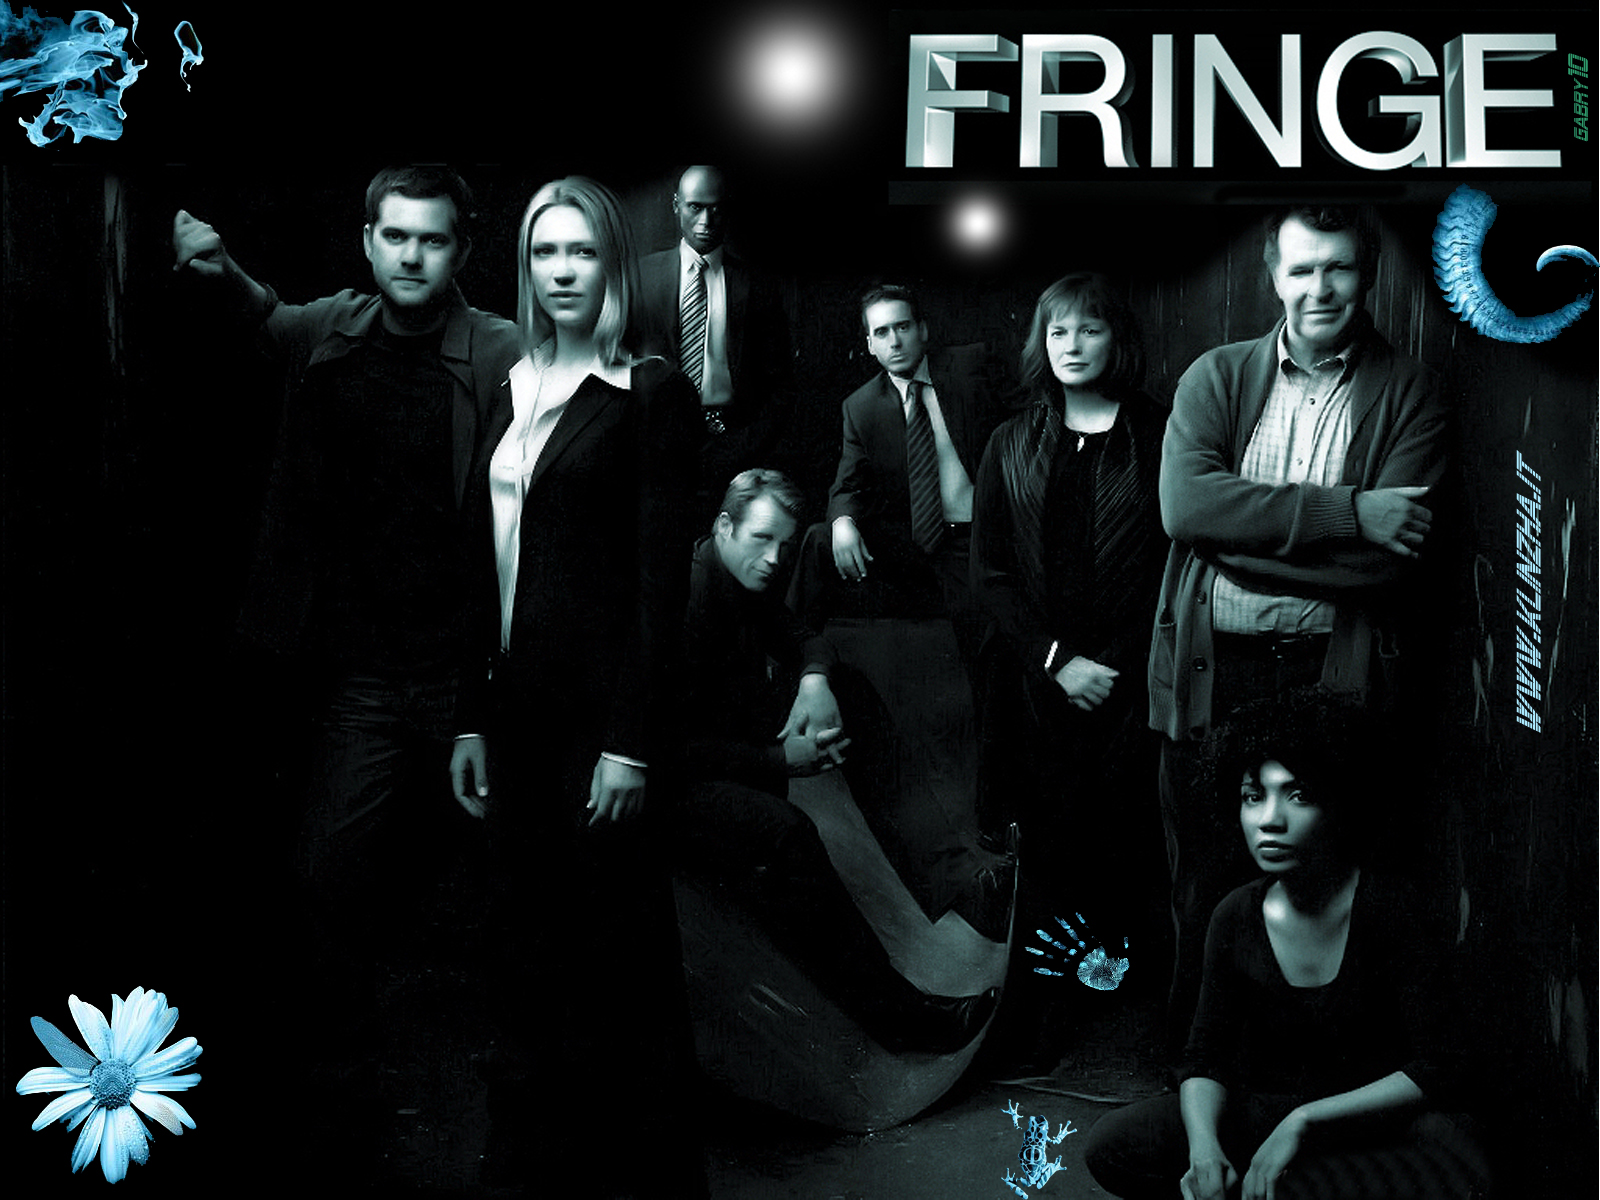 Fringe fall finale is tonight